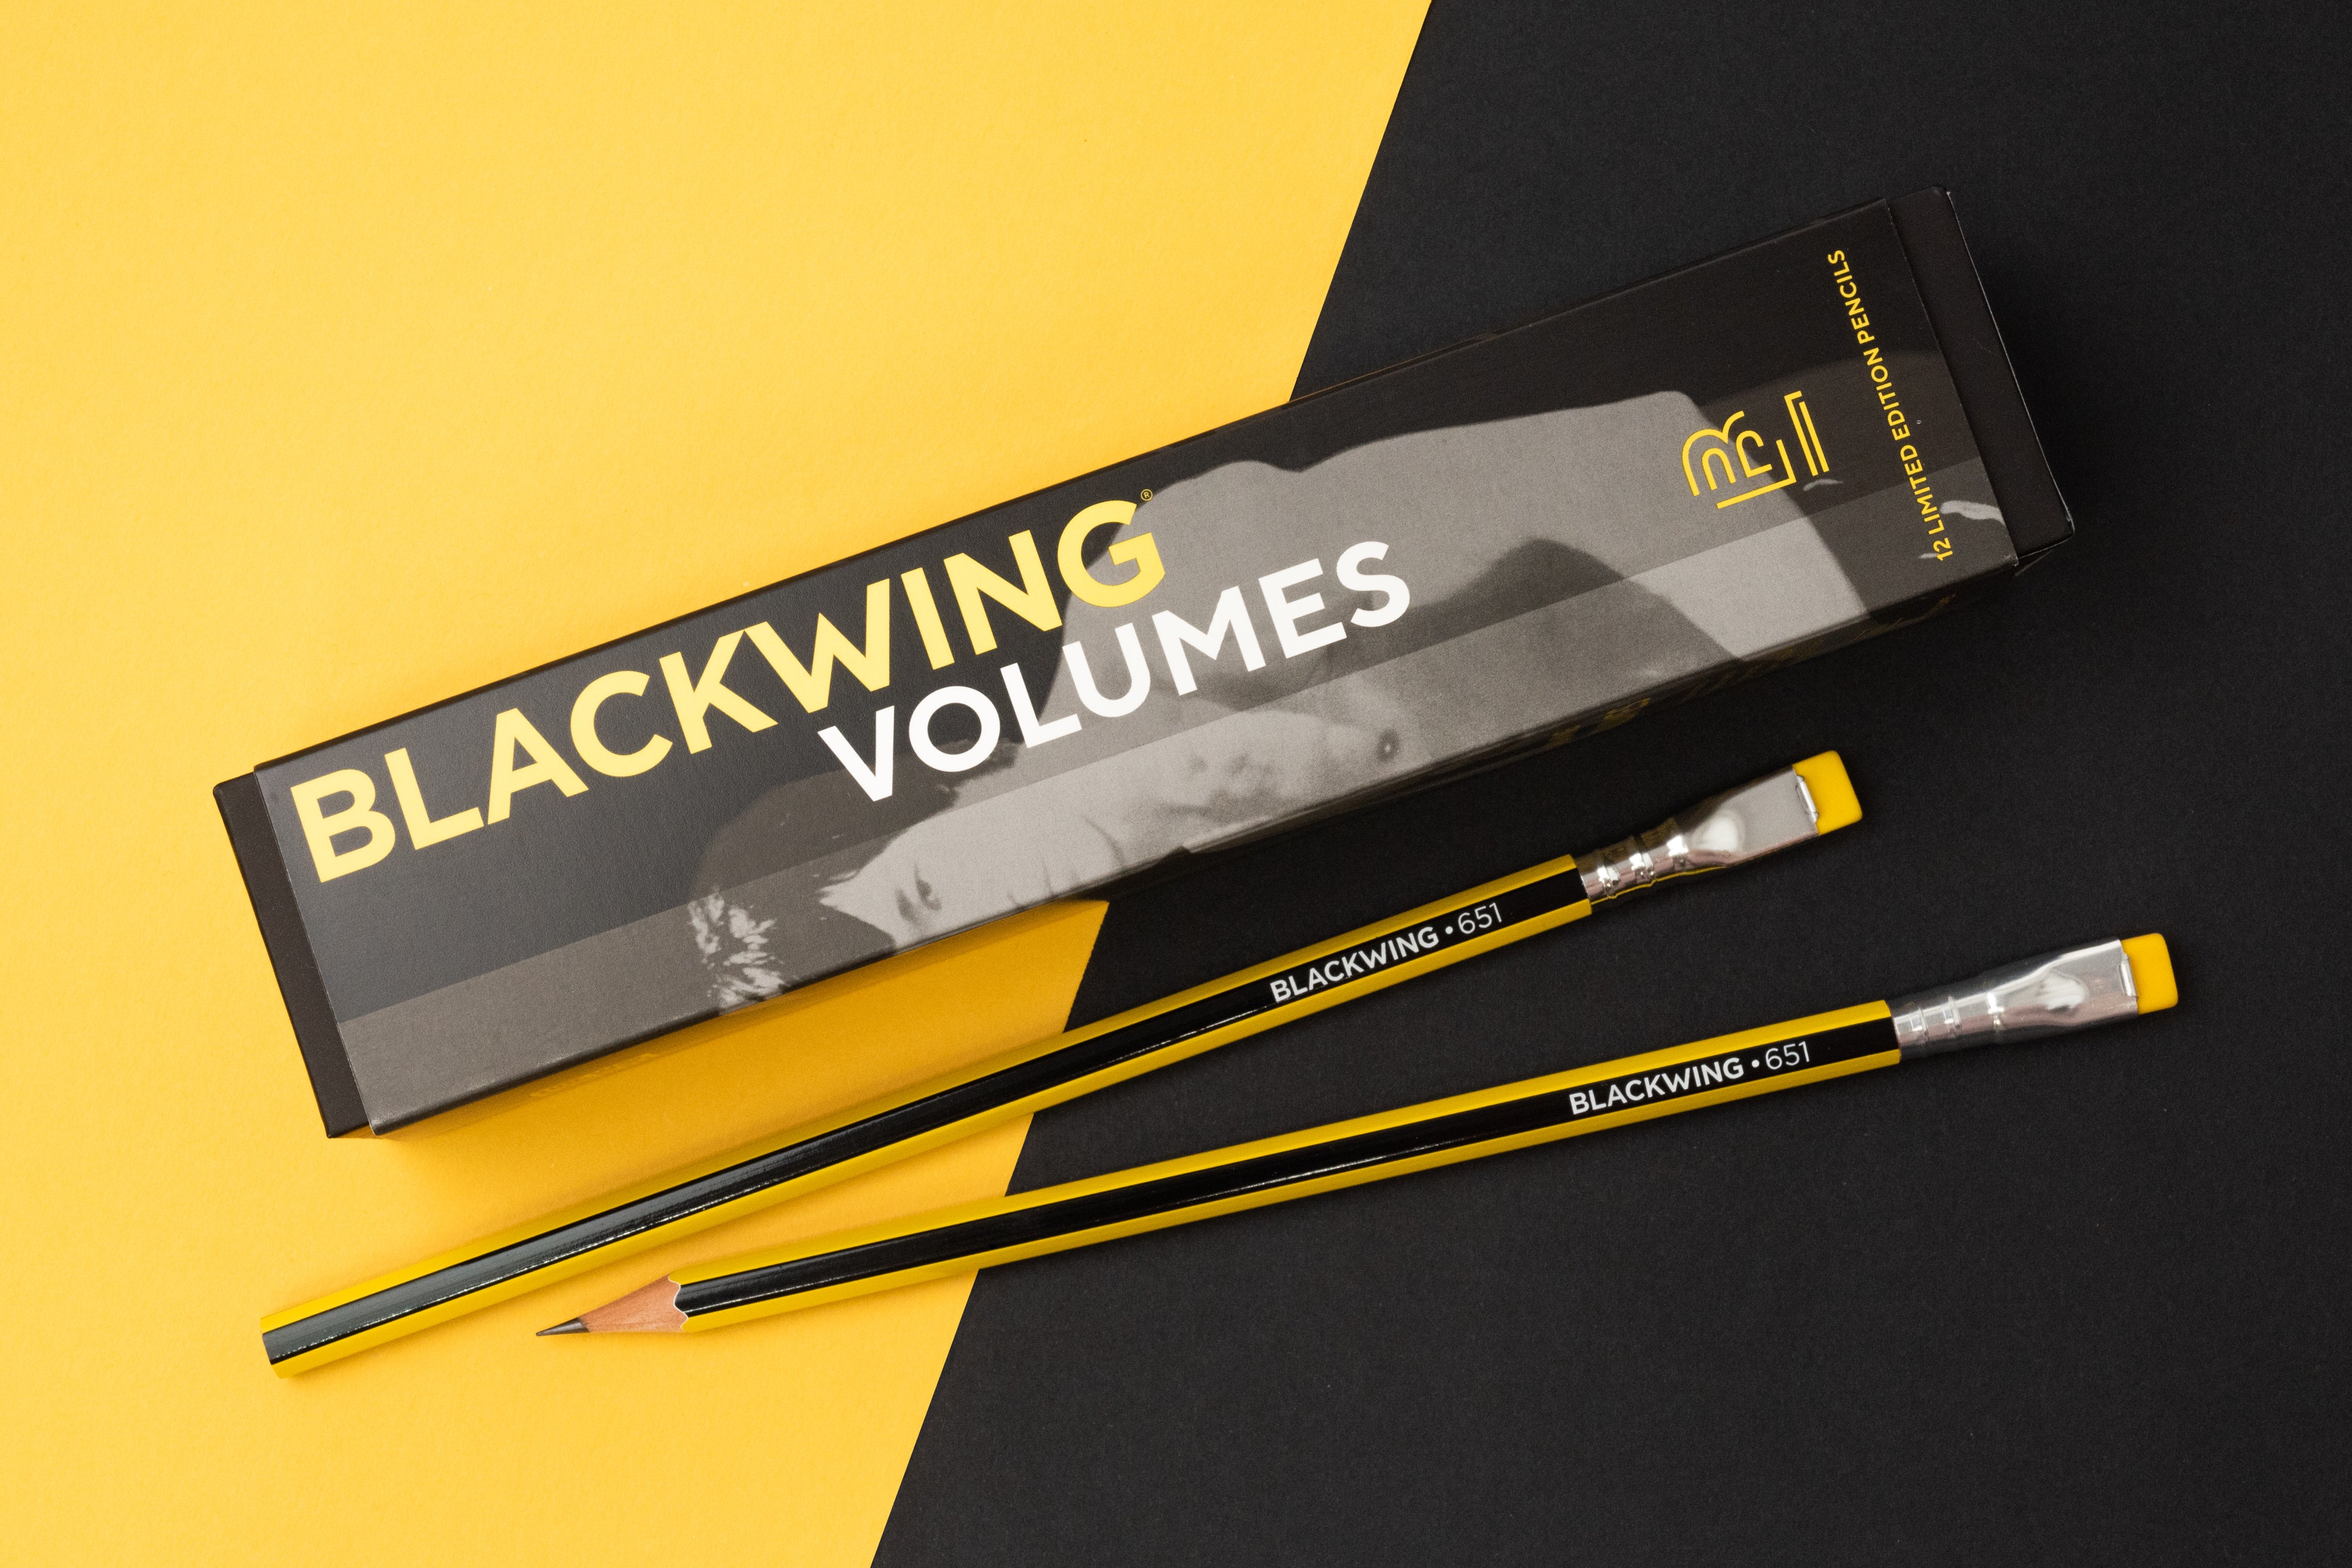 Comprar Blackwing volume 651 Likely.es 